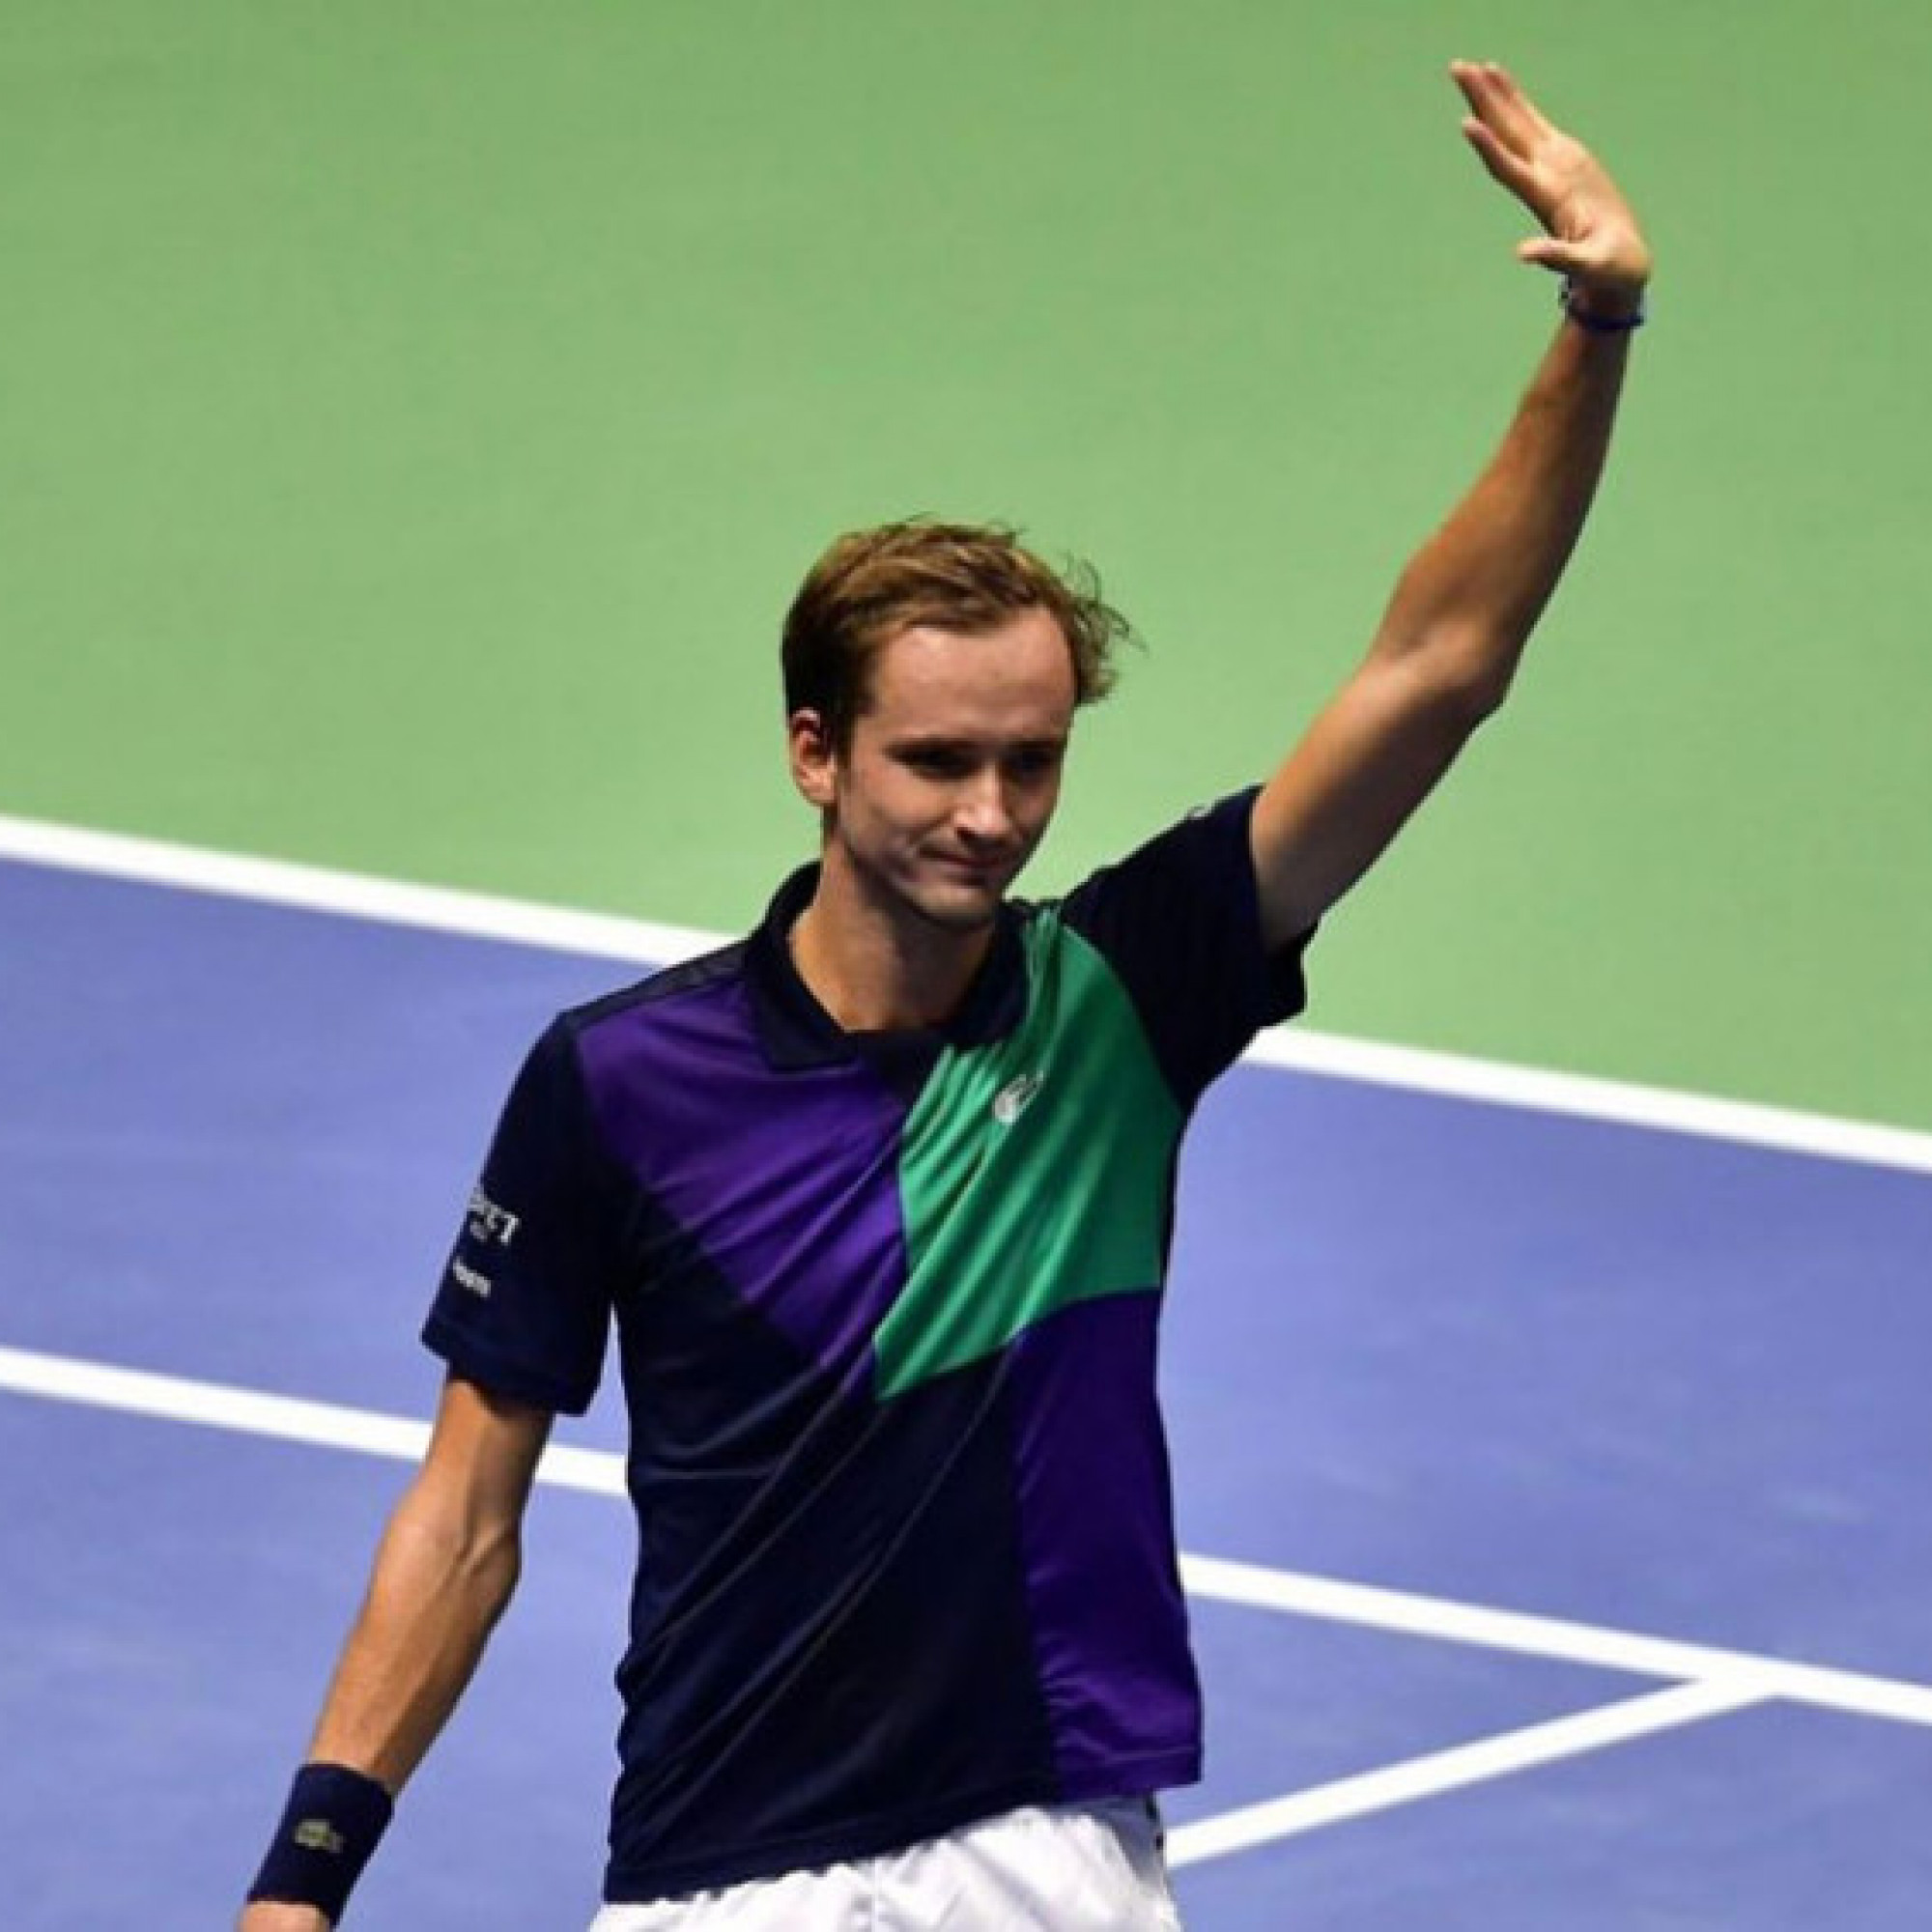  - Nóng bỏng tennis ATP 500: Medvedev chờ ngáng chân Djokovic, Kyrgios bỏ cuộc gây sốc